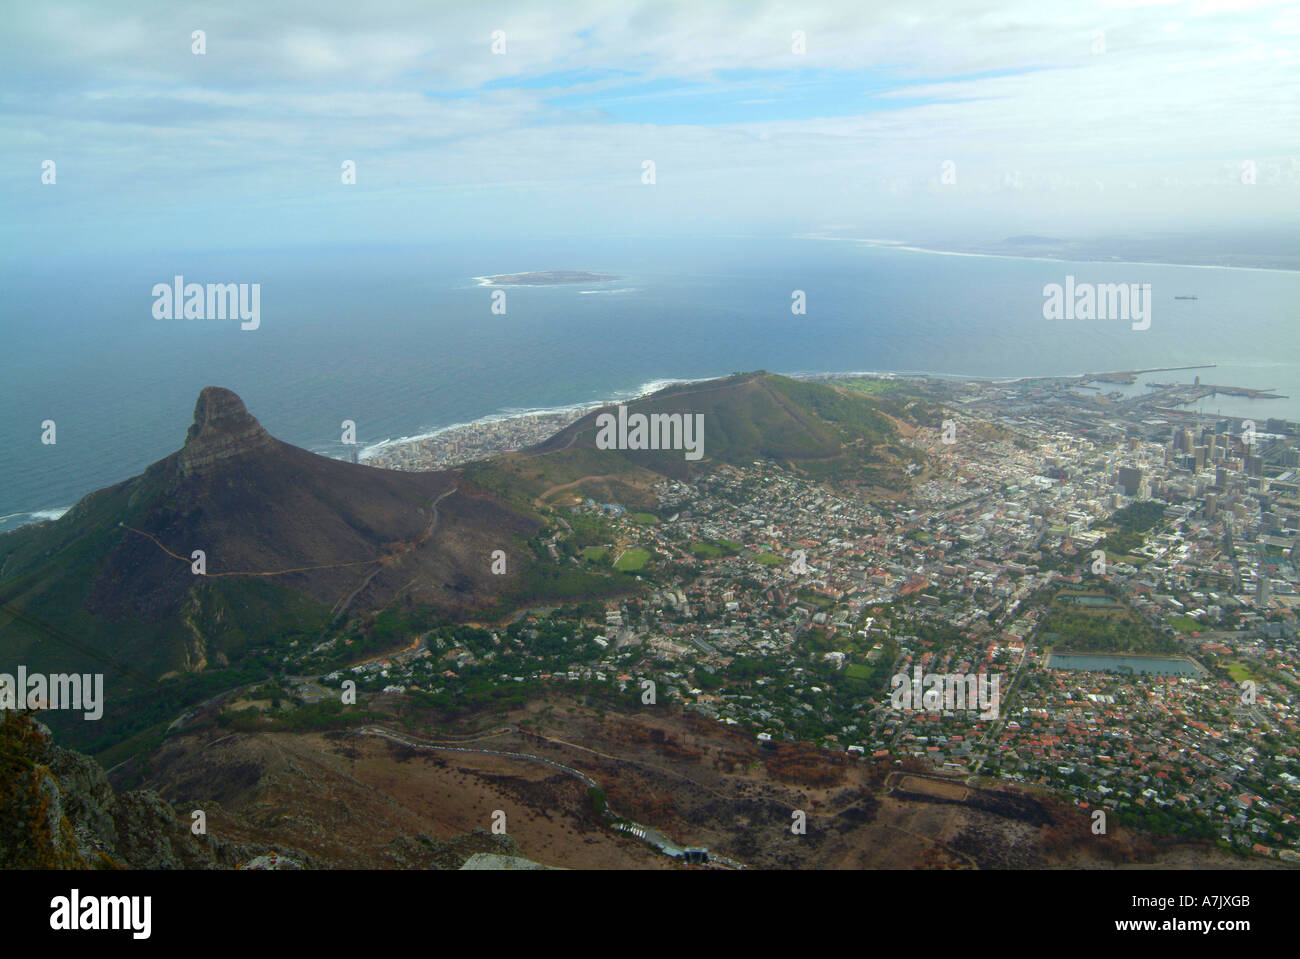 Vue aérienne de la ville du Cap et Signal Hill à partir de la Table Mountain, Cape Province Afrique du Sud Banque D'Images